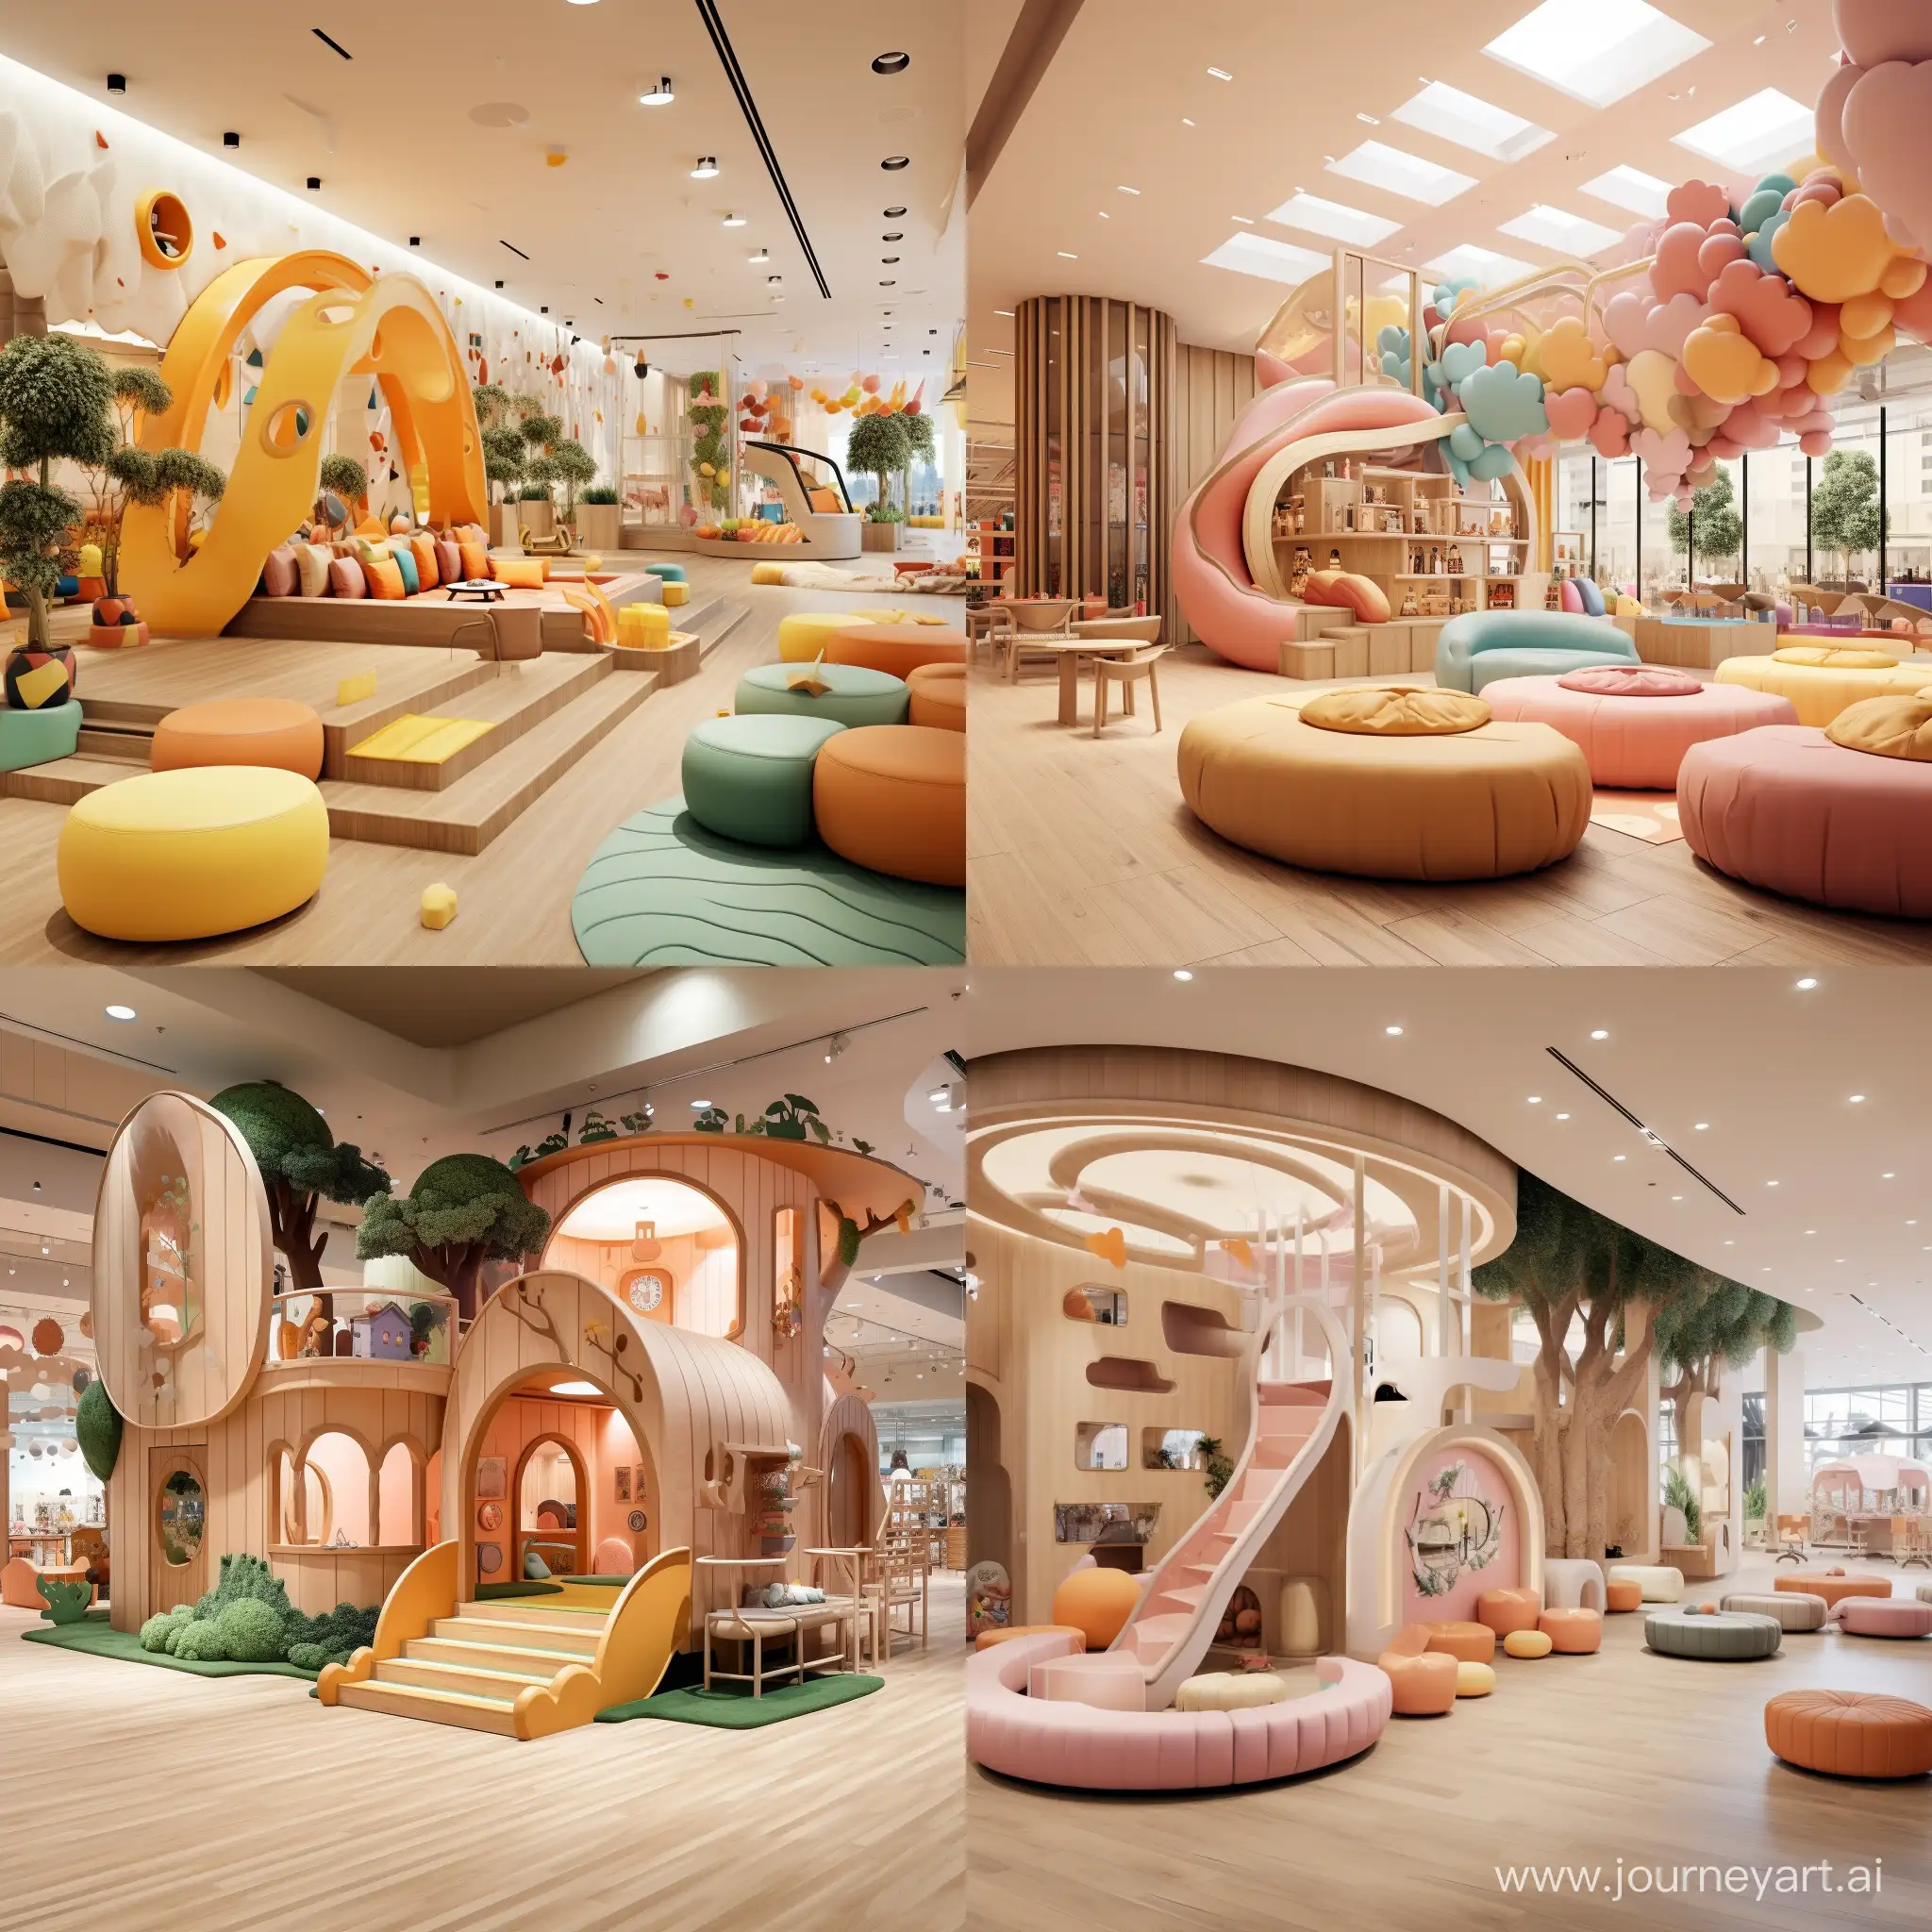 креативный дизайн детской игровой комнаты в торговом центре

